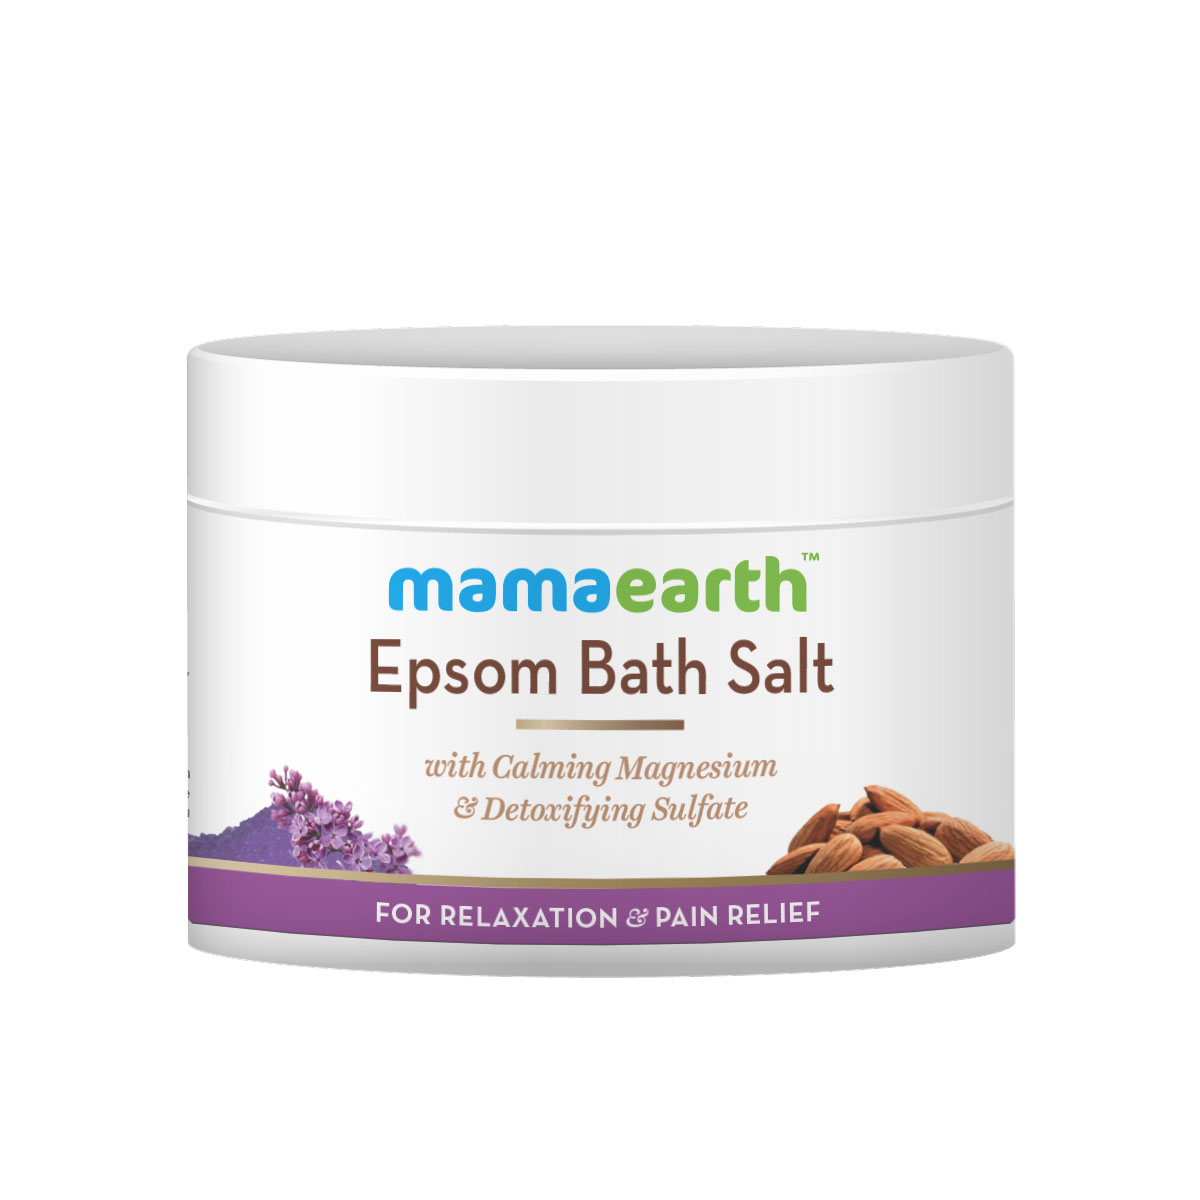 Mamaearth Epsom Bath Salt